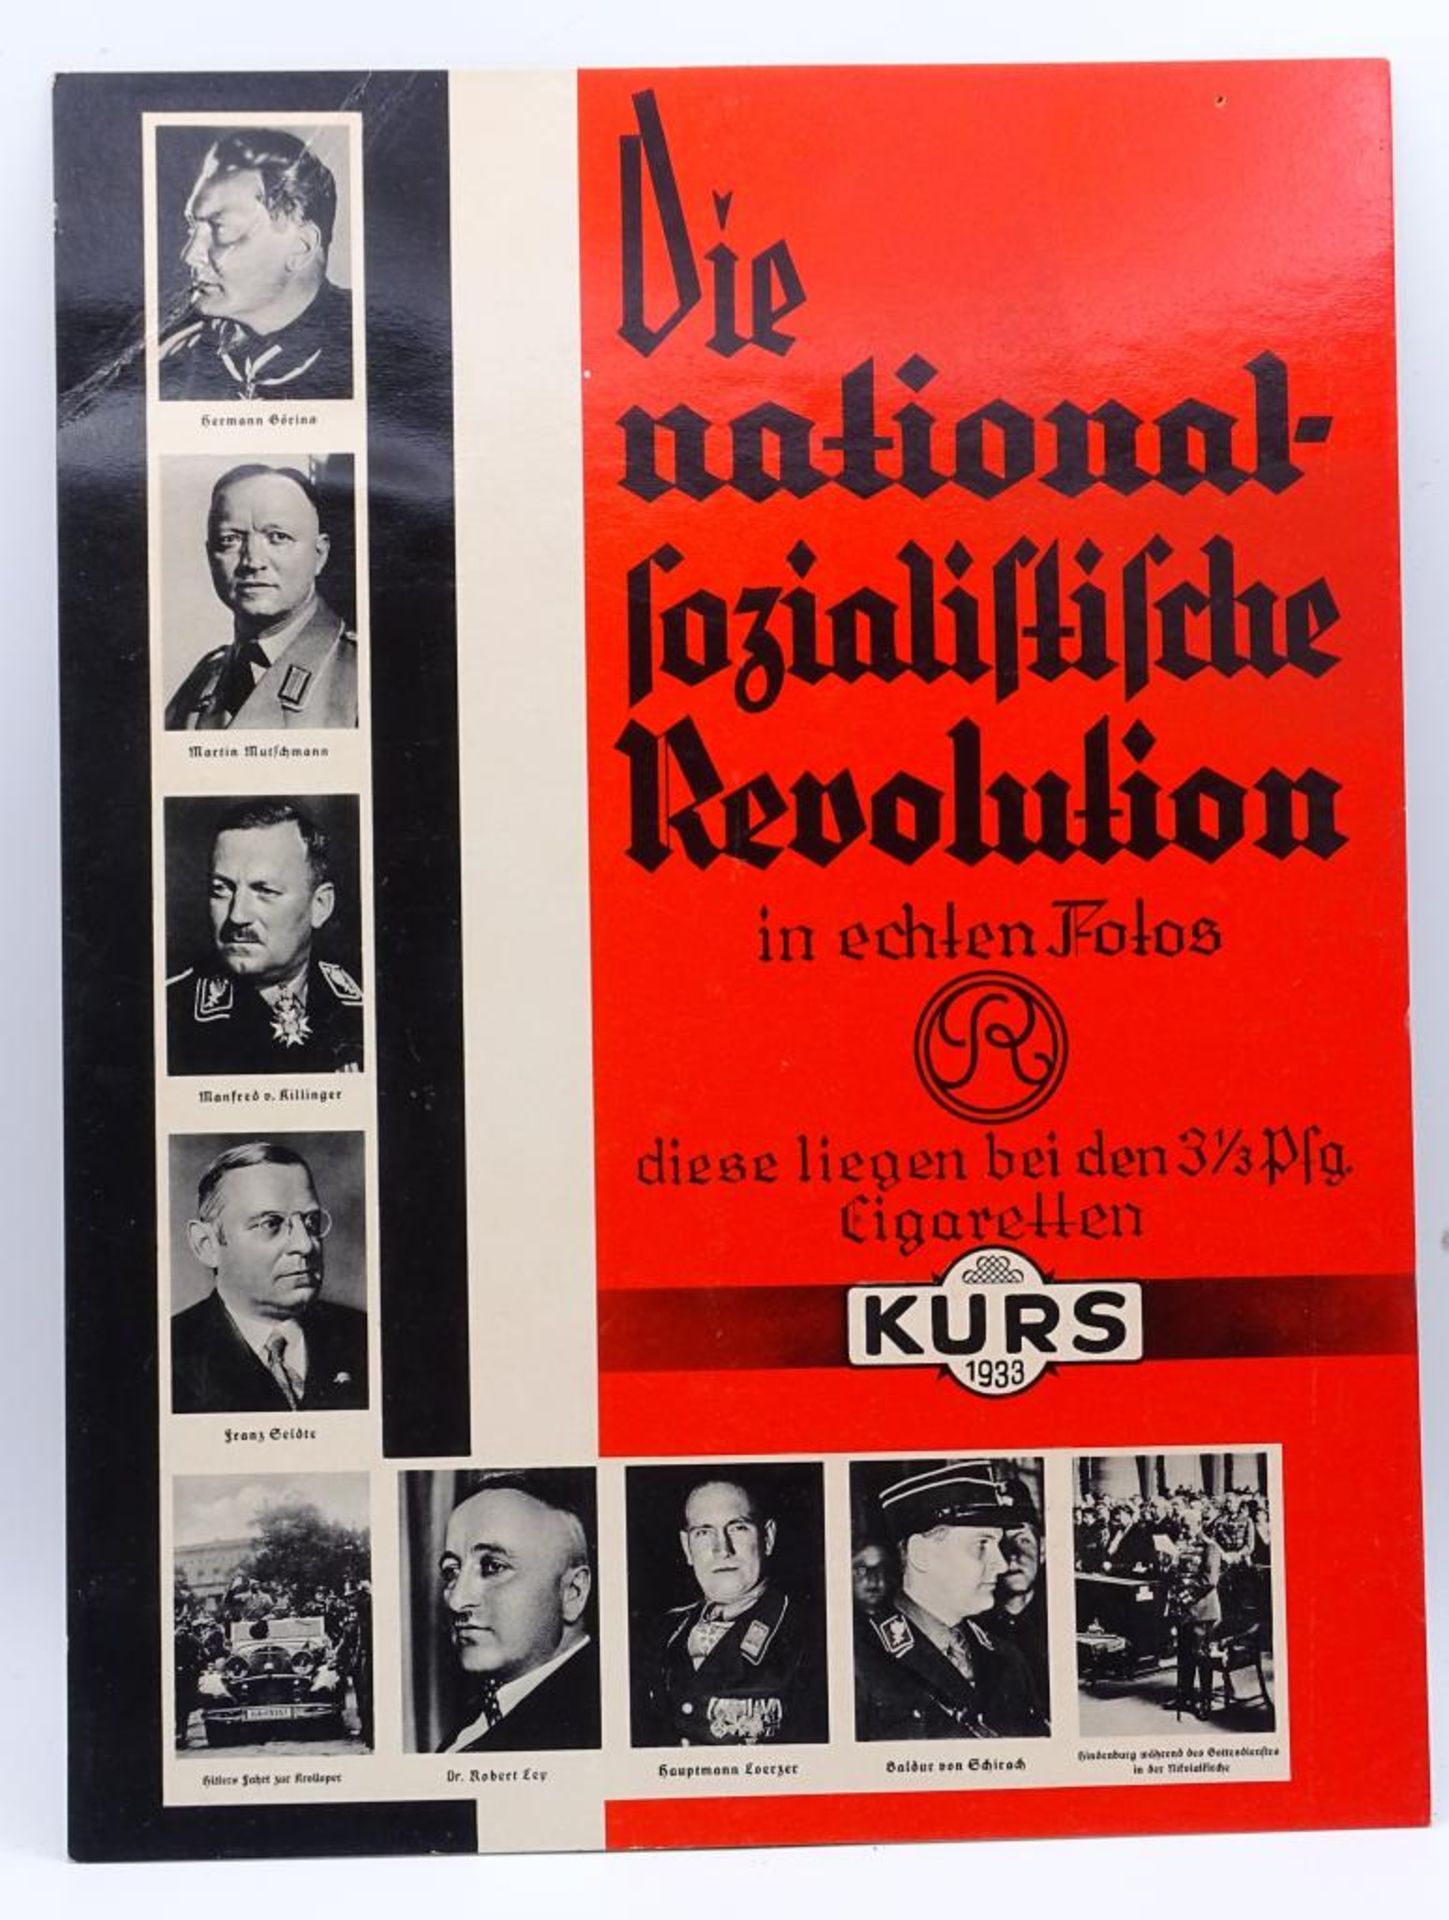 Papp-Tresenaufsteller von 1933 "Die NS Revolution" in echten Fotos, diese liegen bei den 3 1/2 Pf.